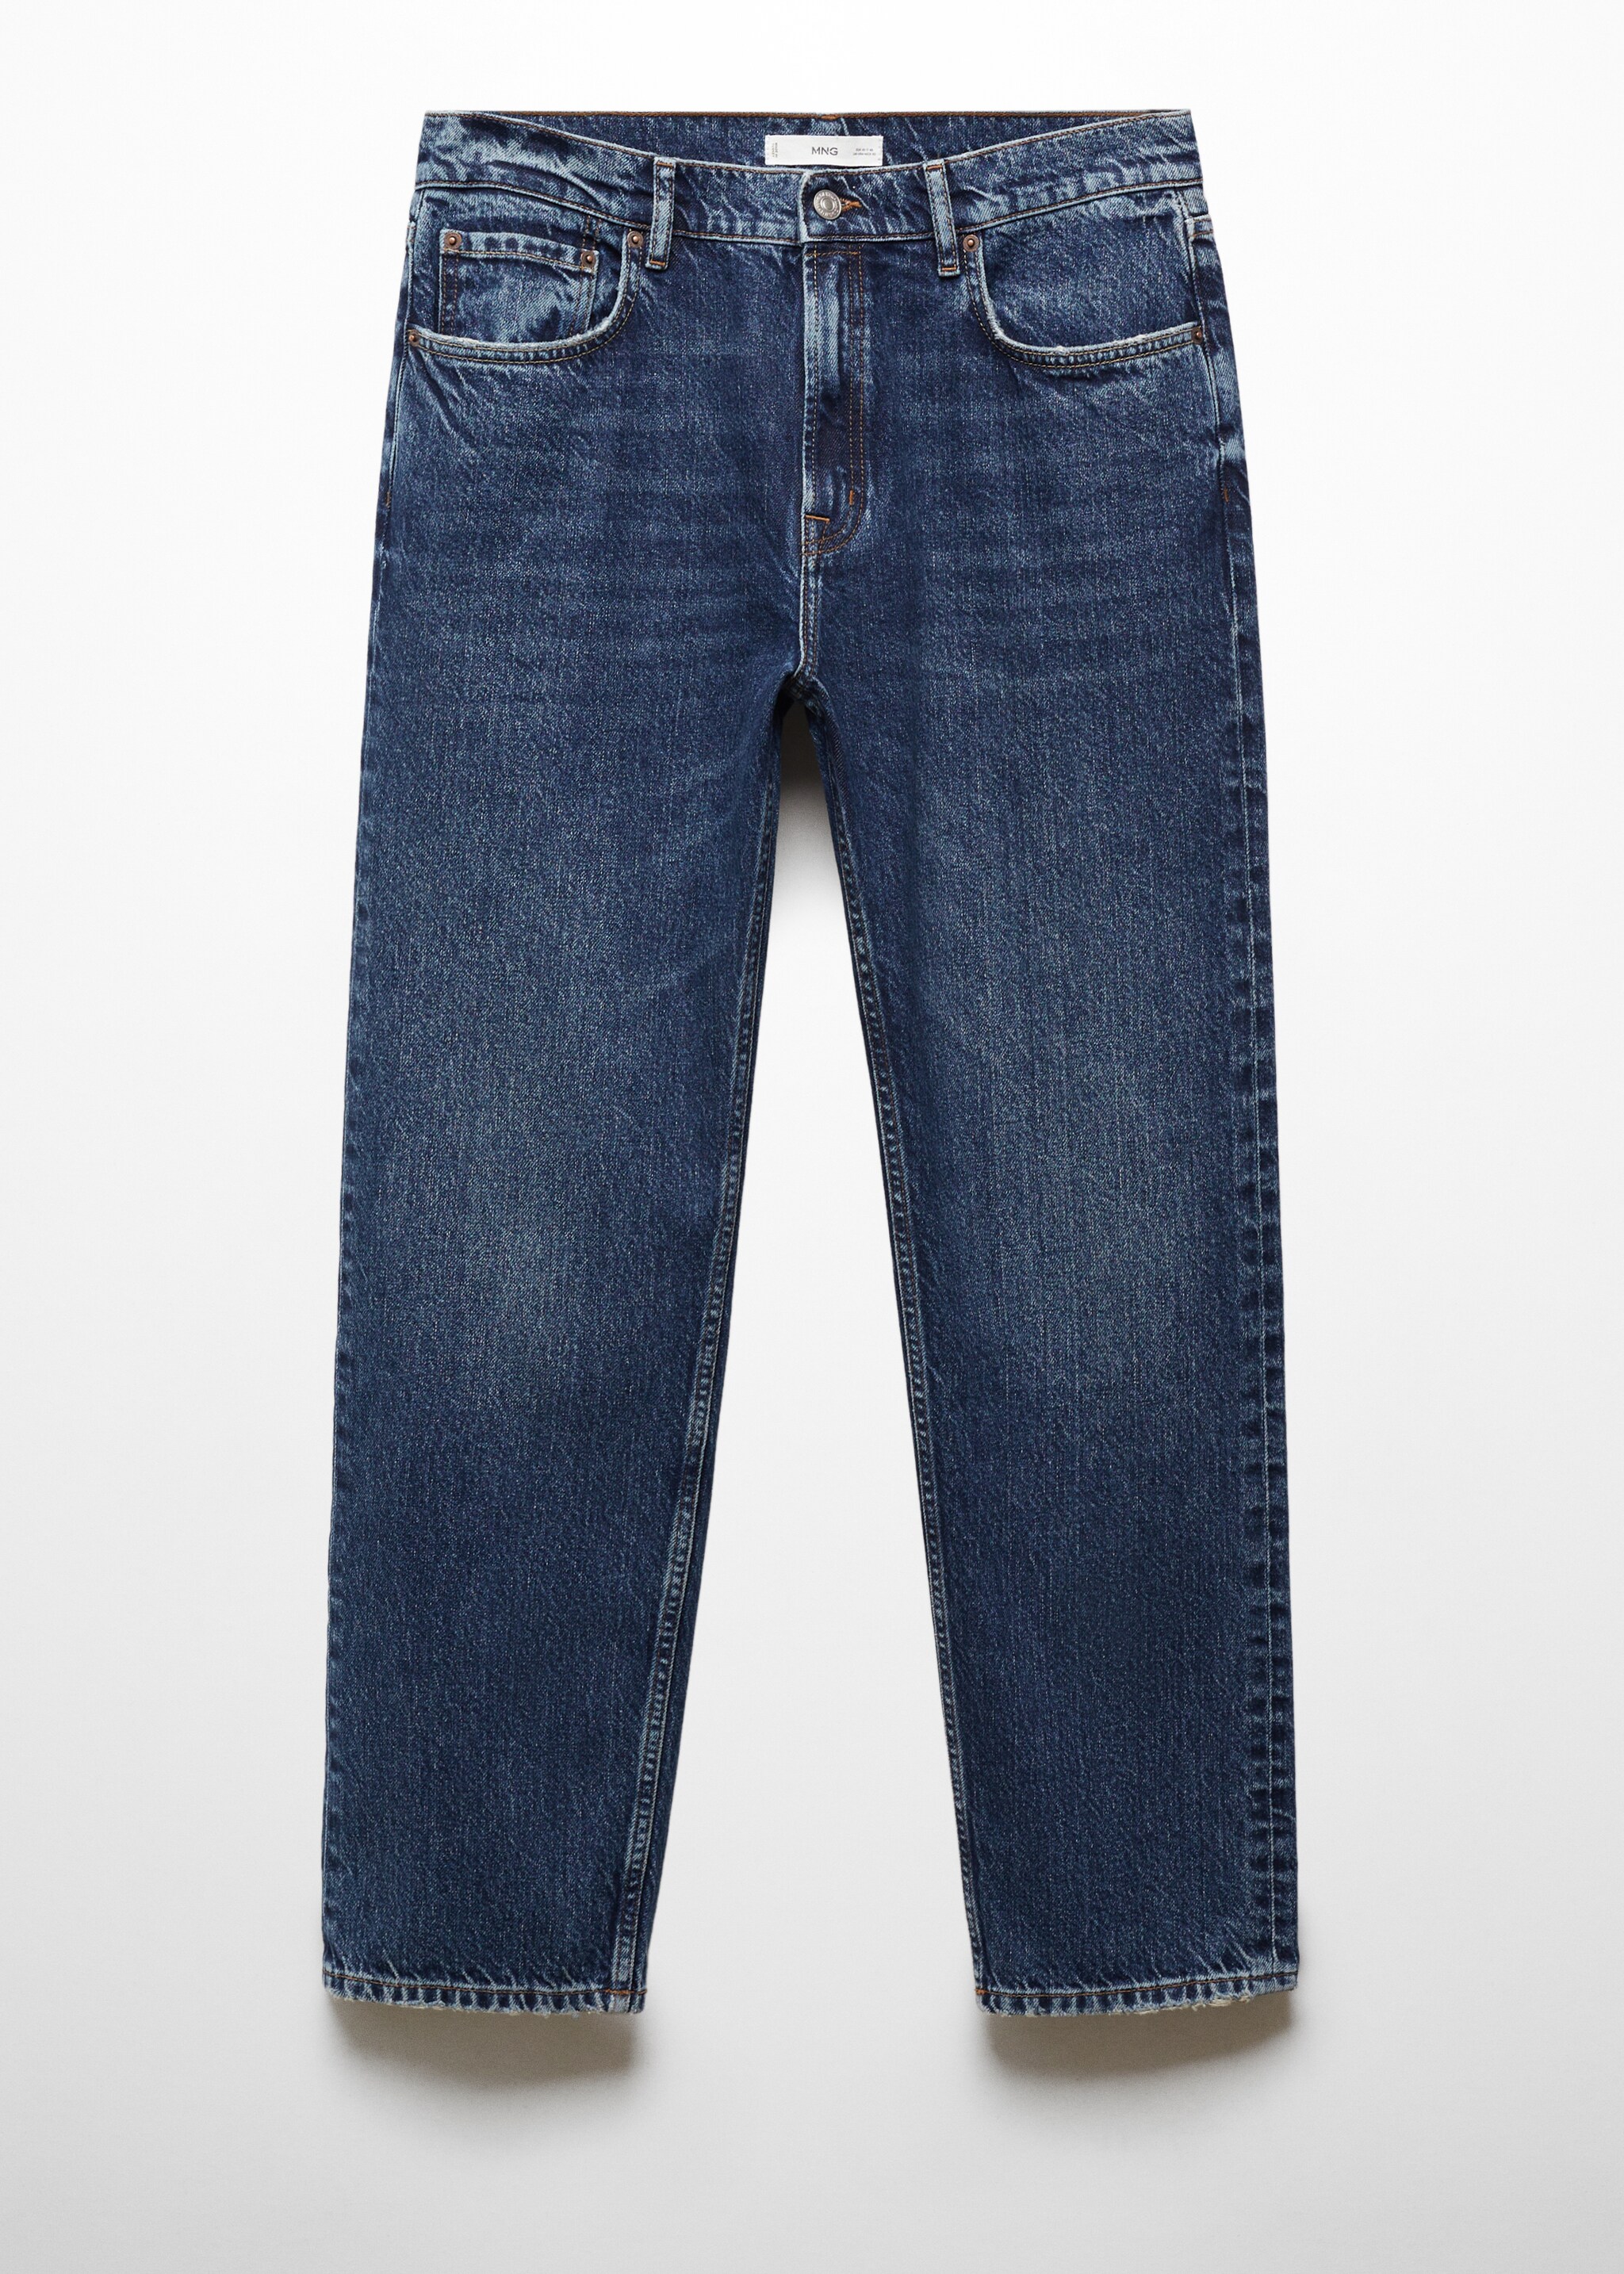 Jeans regular fit lavado oscuro - Artículo sin modelo